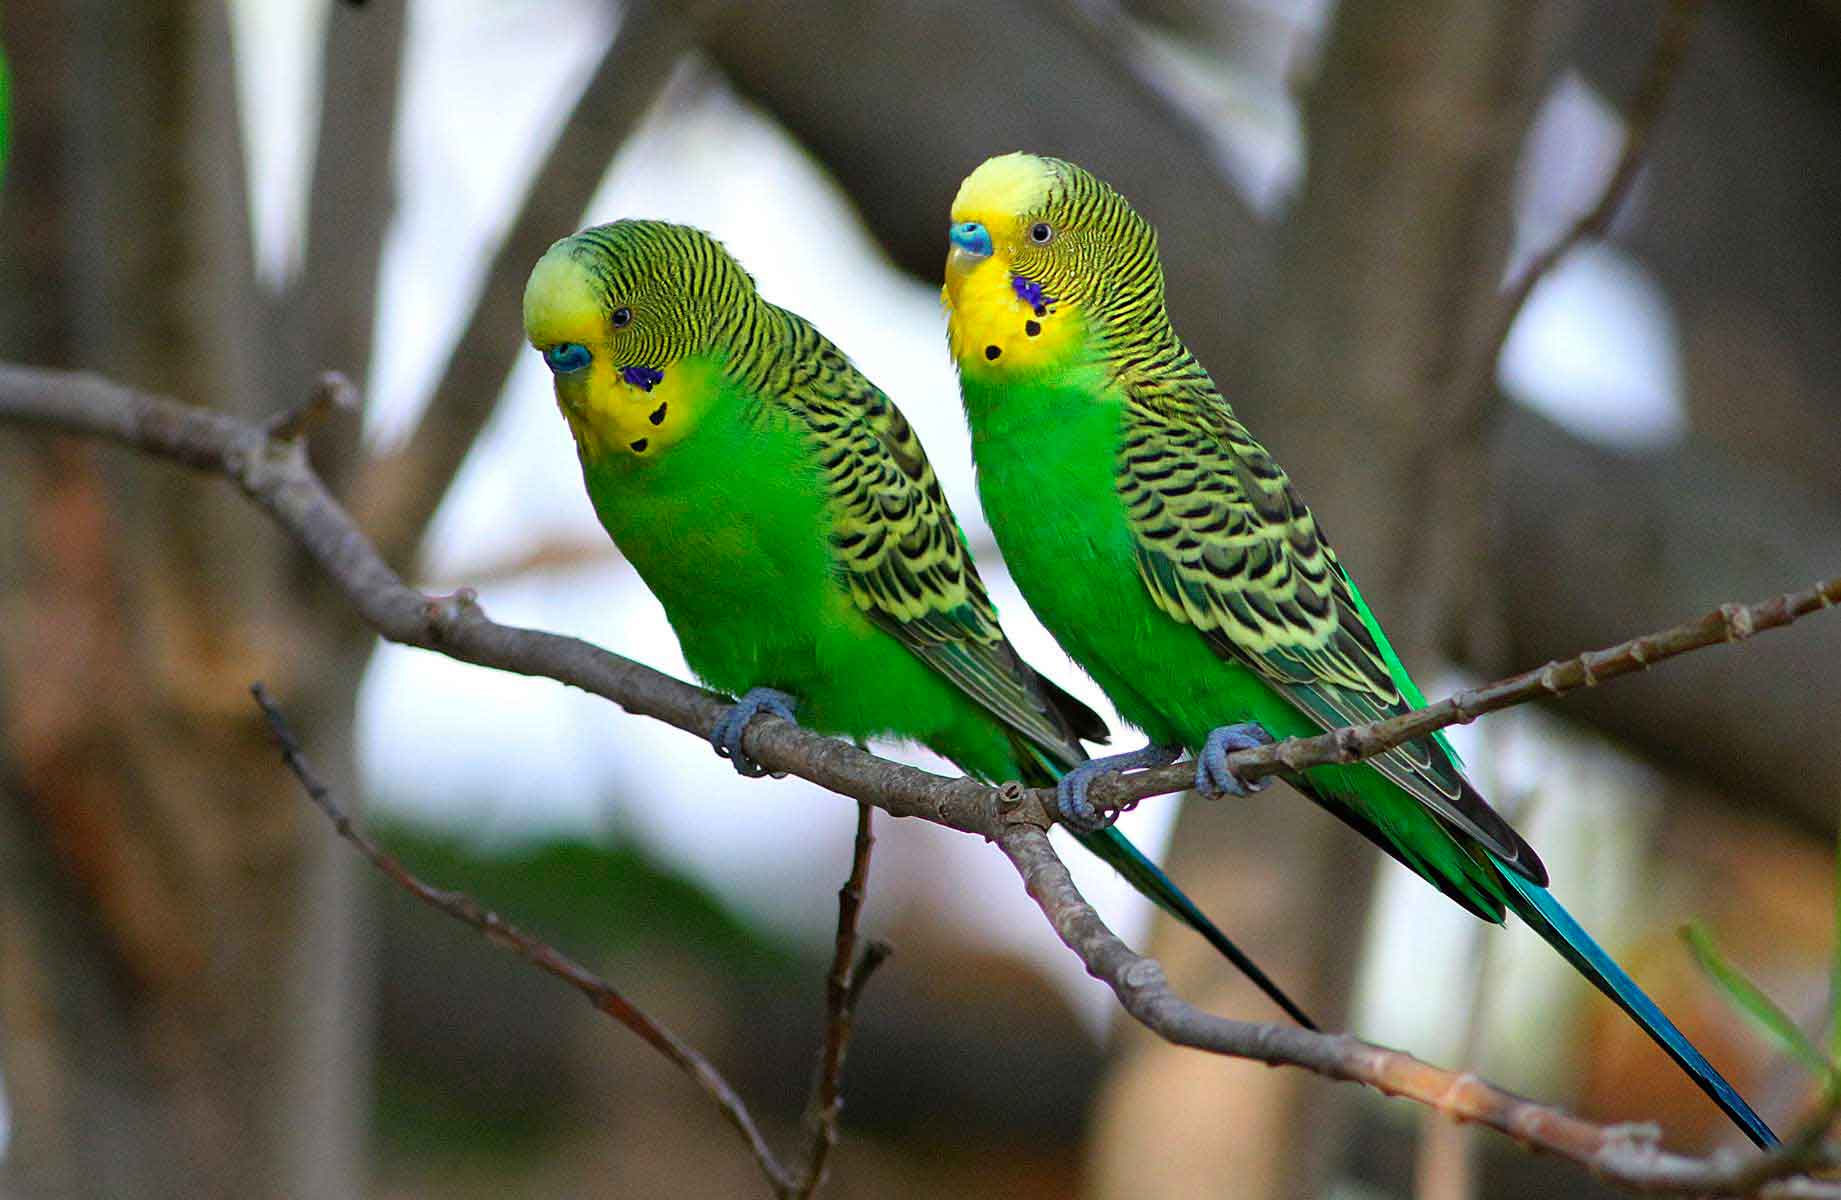 Выставочные волнистые попугаи всех цветов радуги: разновидности и фото пернатых